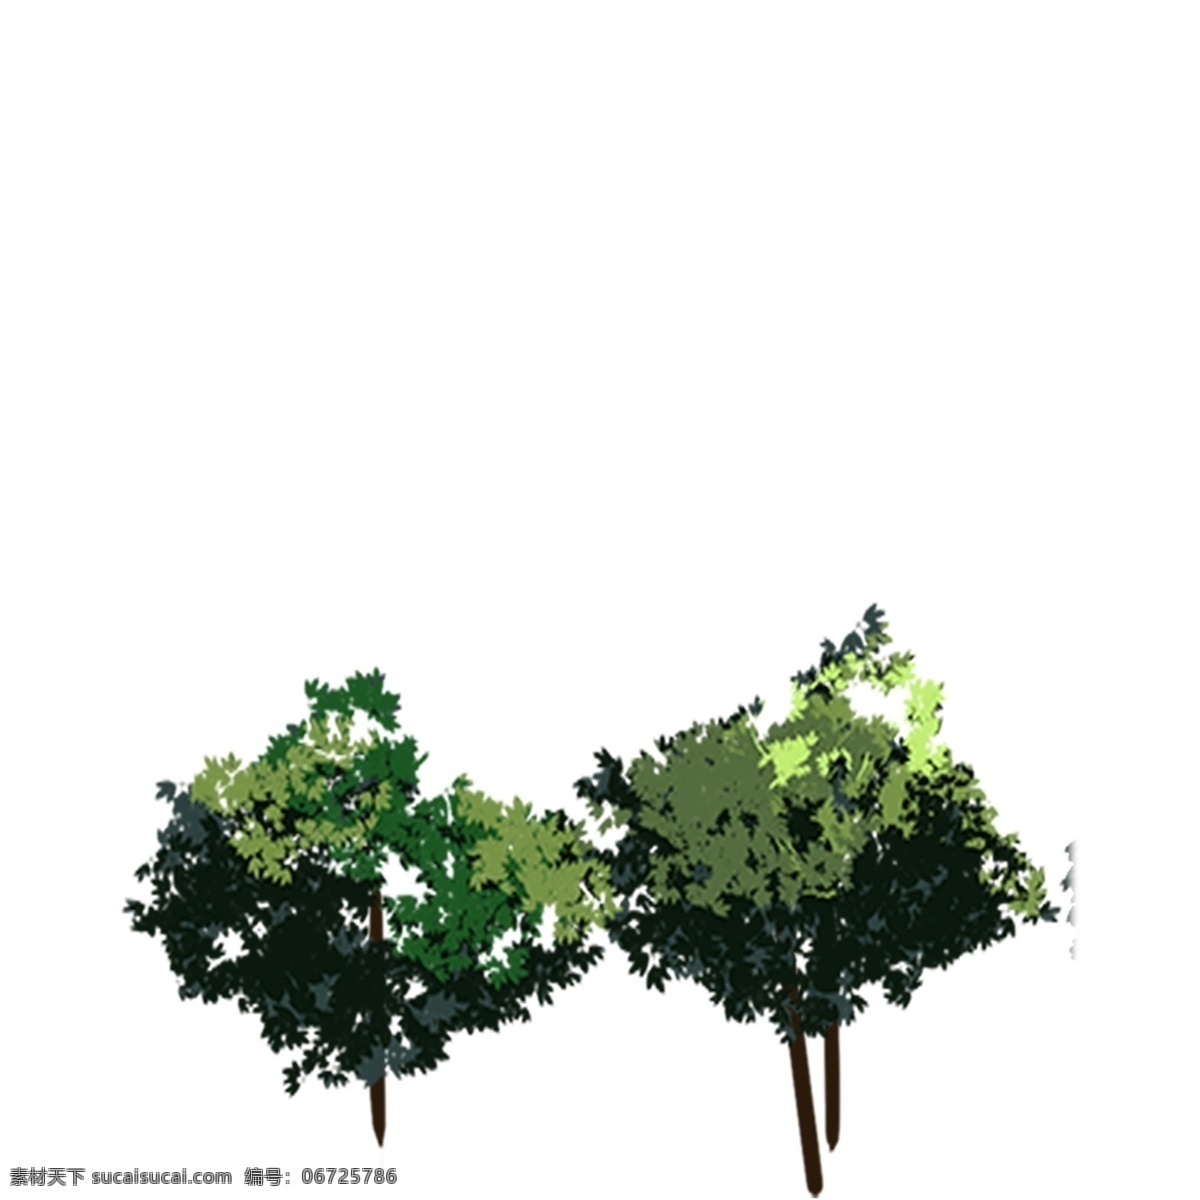 两 颗 树木 免 扣 图 两颗 树木免扣图 卡通植物树木 小树免扣图 卡通小树木 茂密